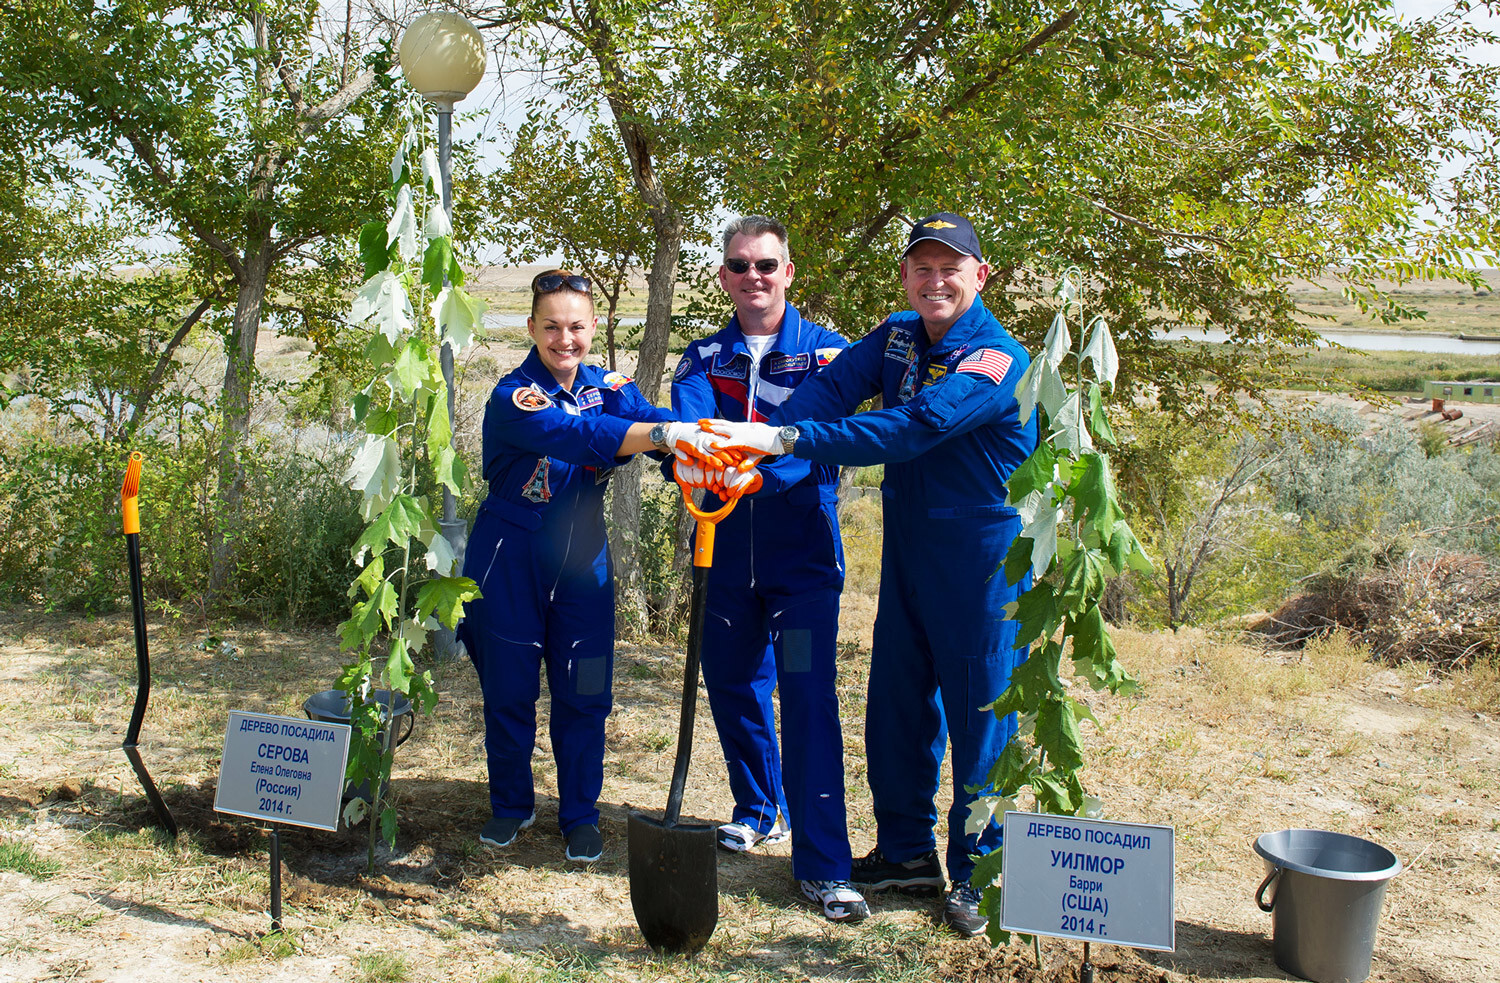 Los cosmonautas de Roscosmos Alexánder Samokutyayev (C) y Yelena Serova y el astronauta de la NASA Barry Wilmore plantan árboles en el Centro Espacial de Baikonur, septiembre de 2014.